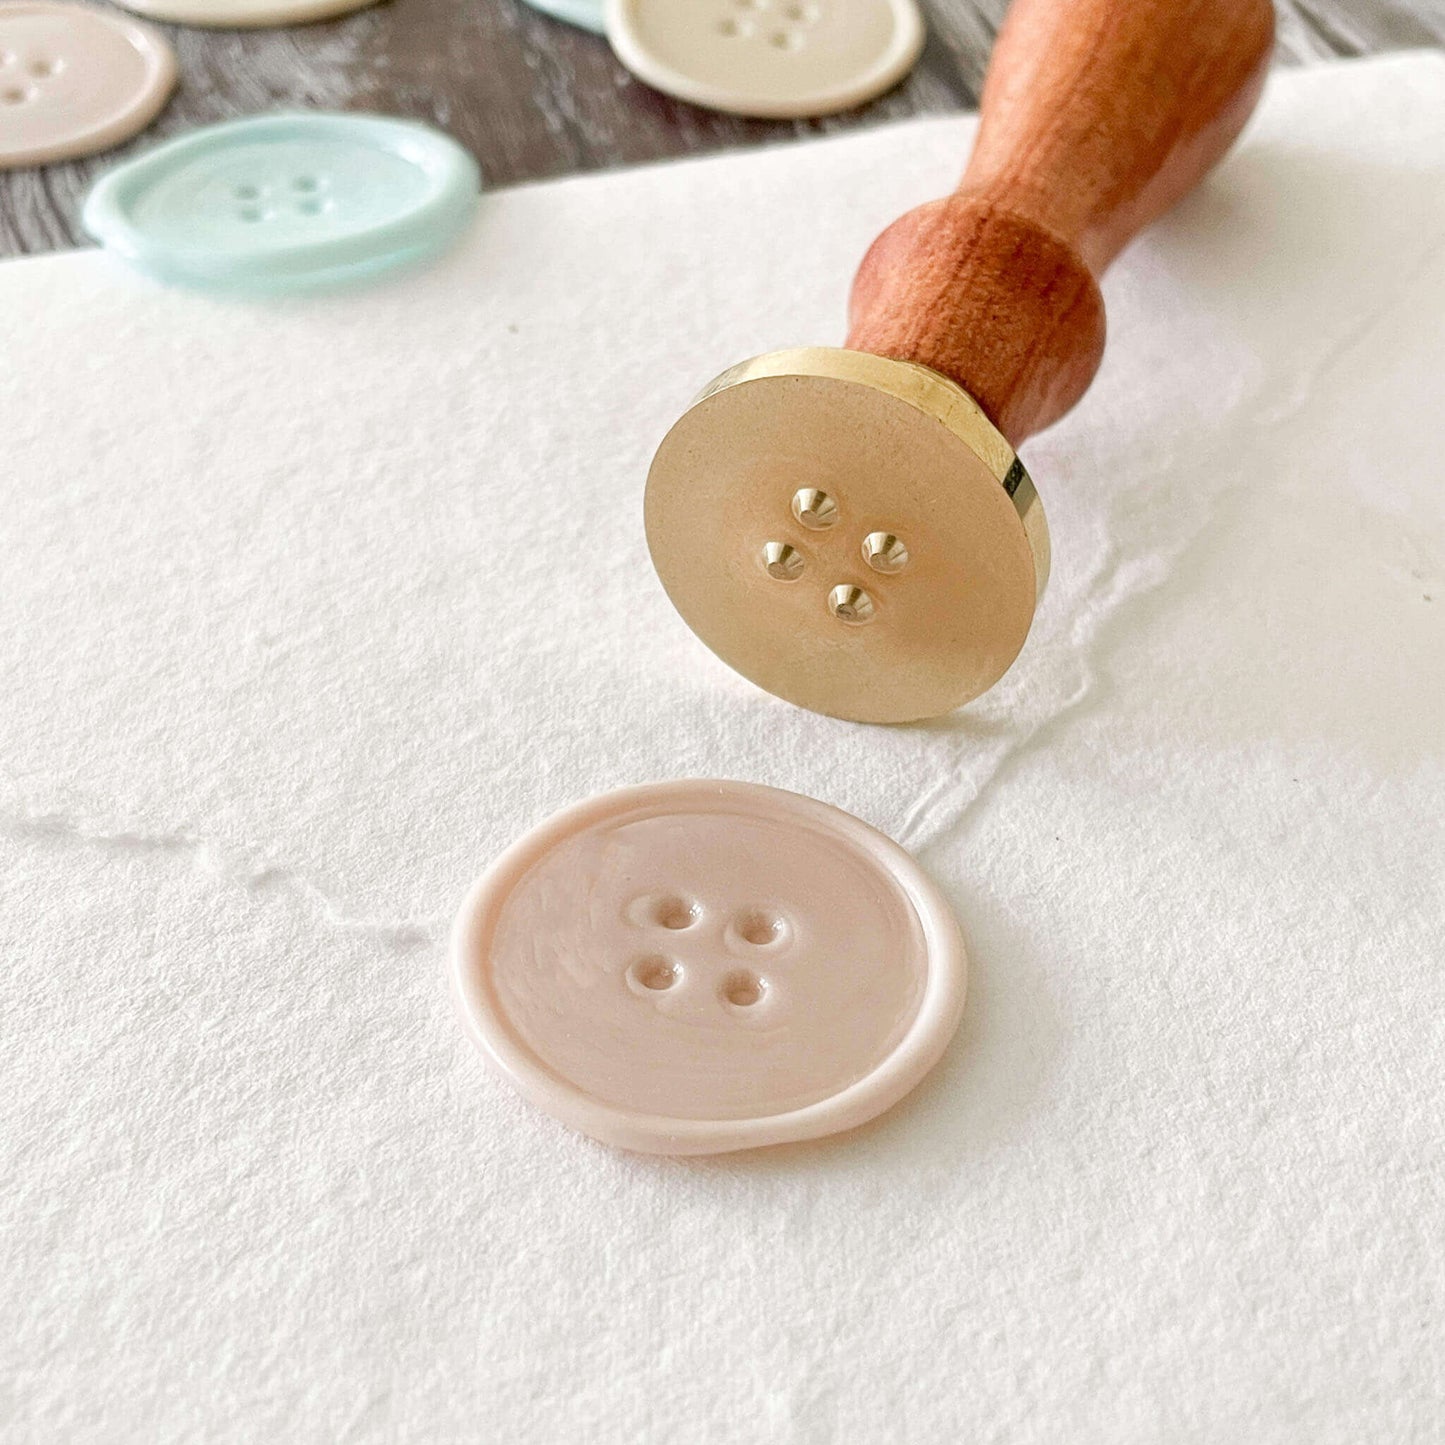 wax-stamp-button